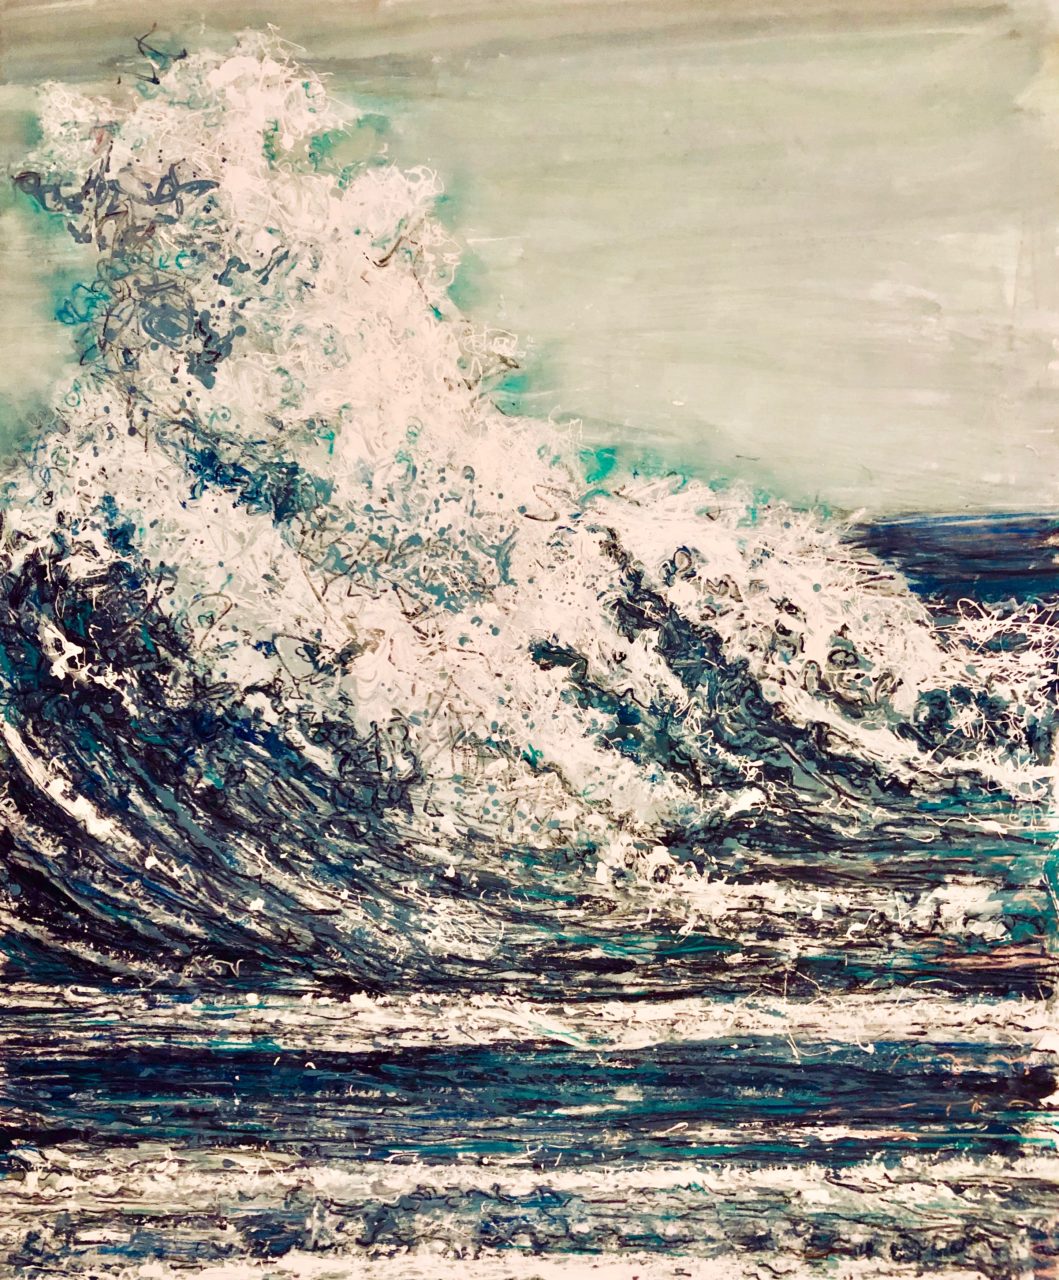 La vague, 165 x 130 cm, techniques mixtes